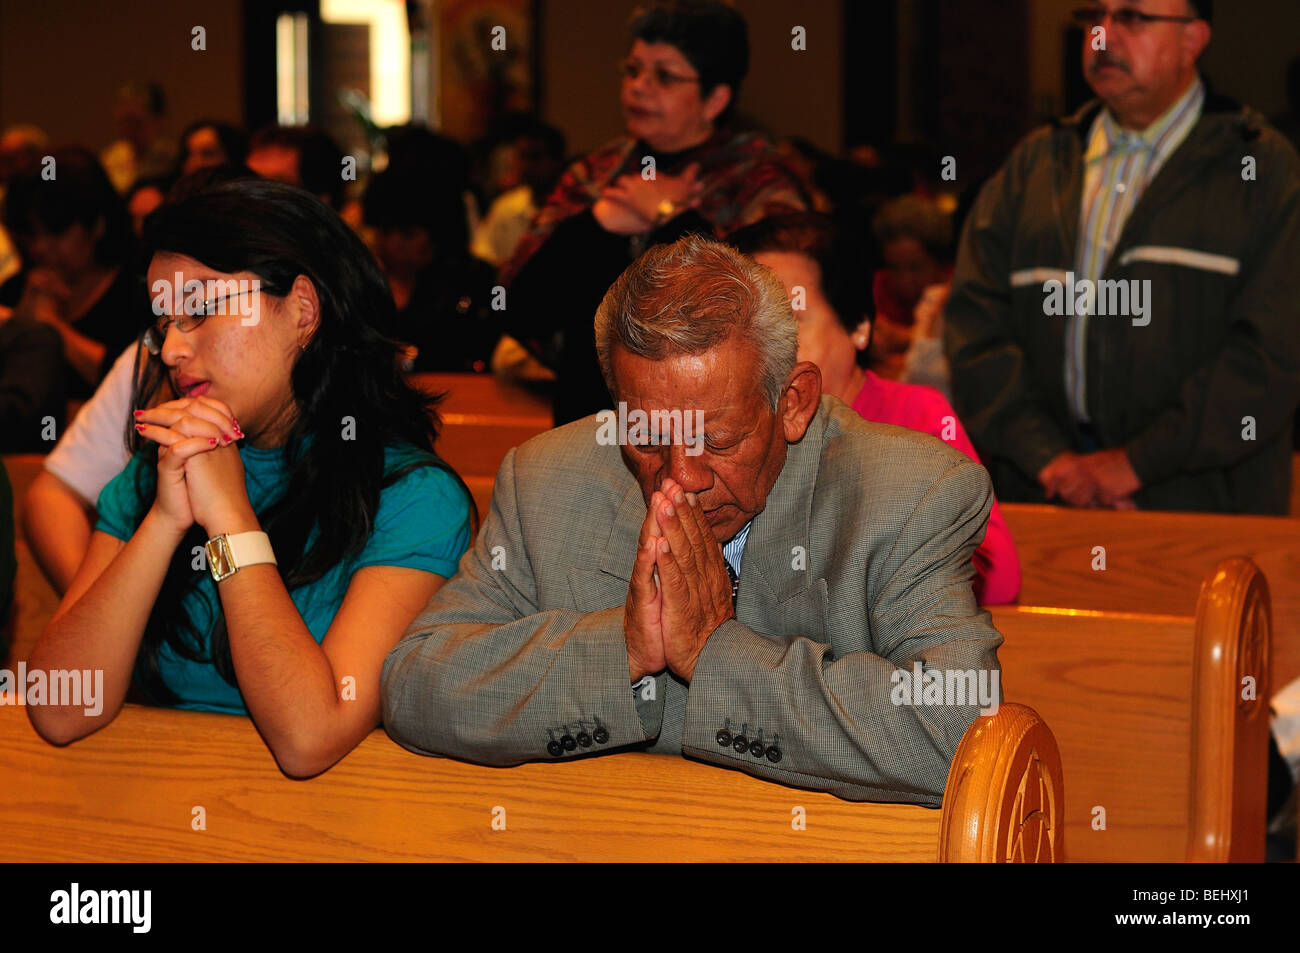 A family prays at a Catholic church. Stock Photo